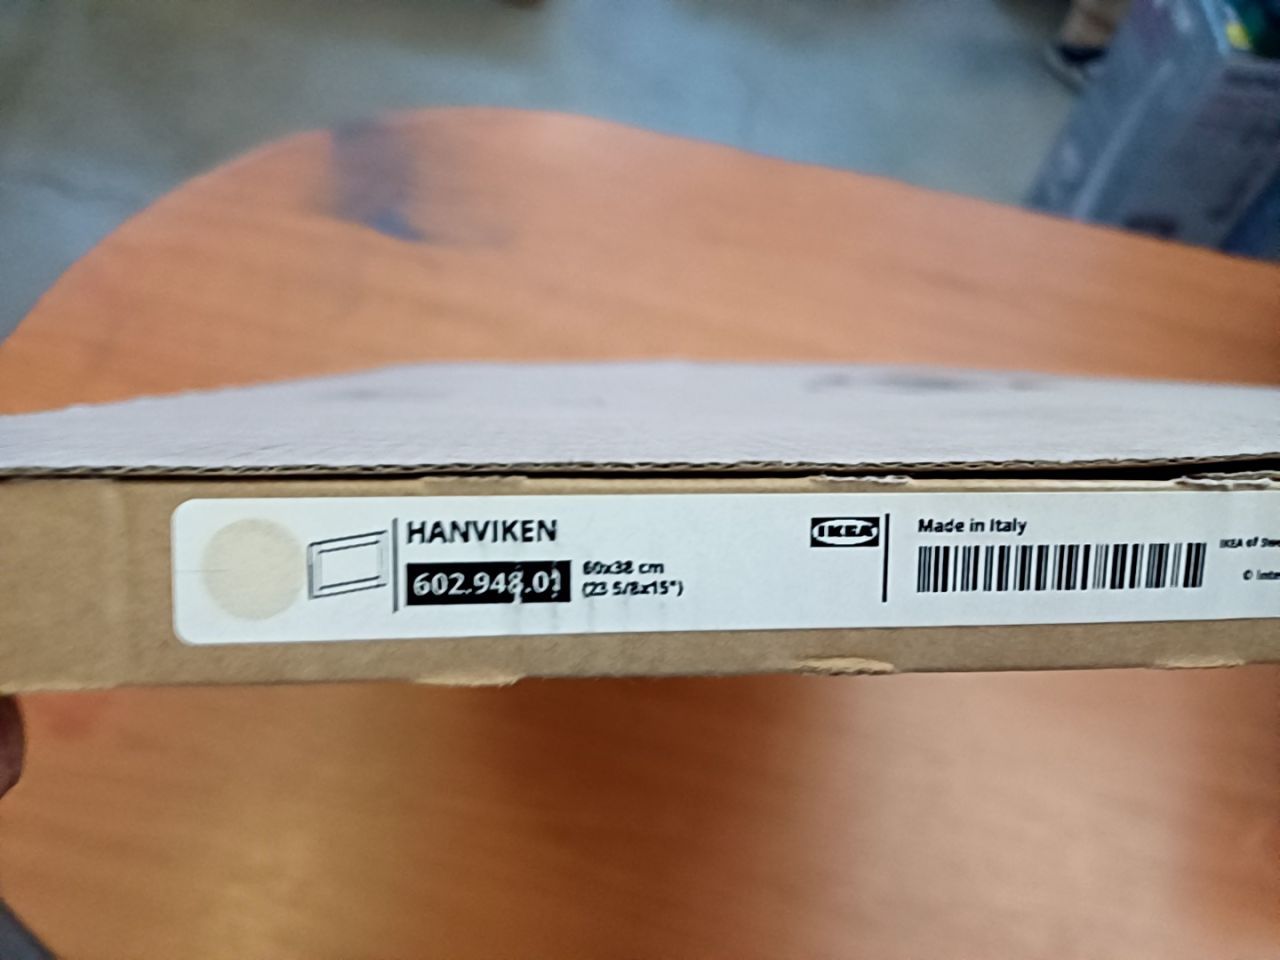 Dveře/čelo zásuvky Ikea HANVIKEN